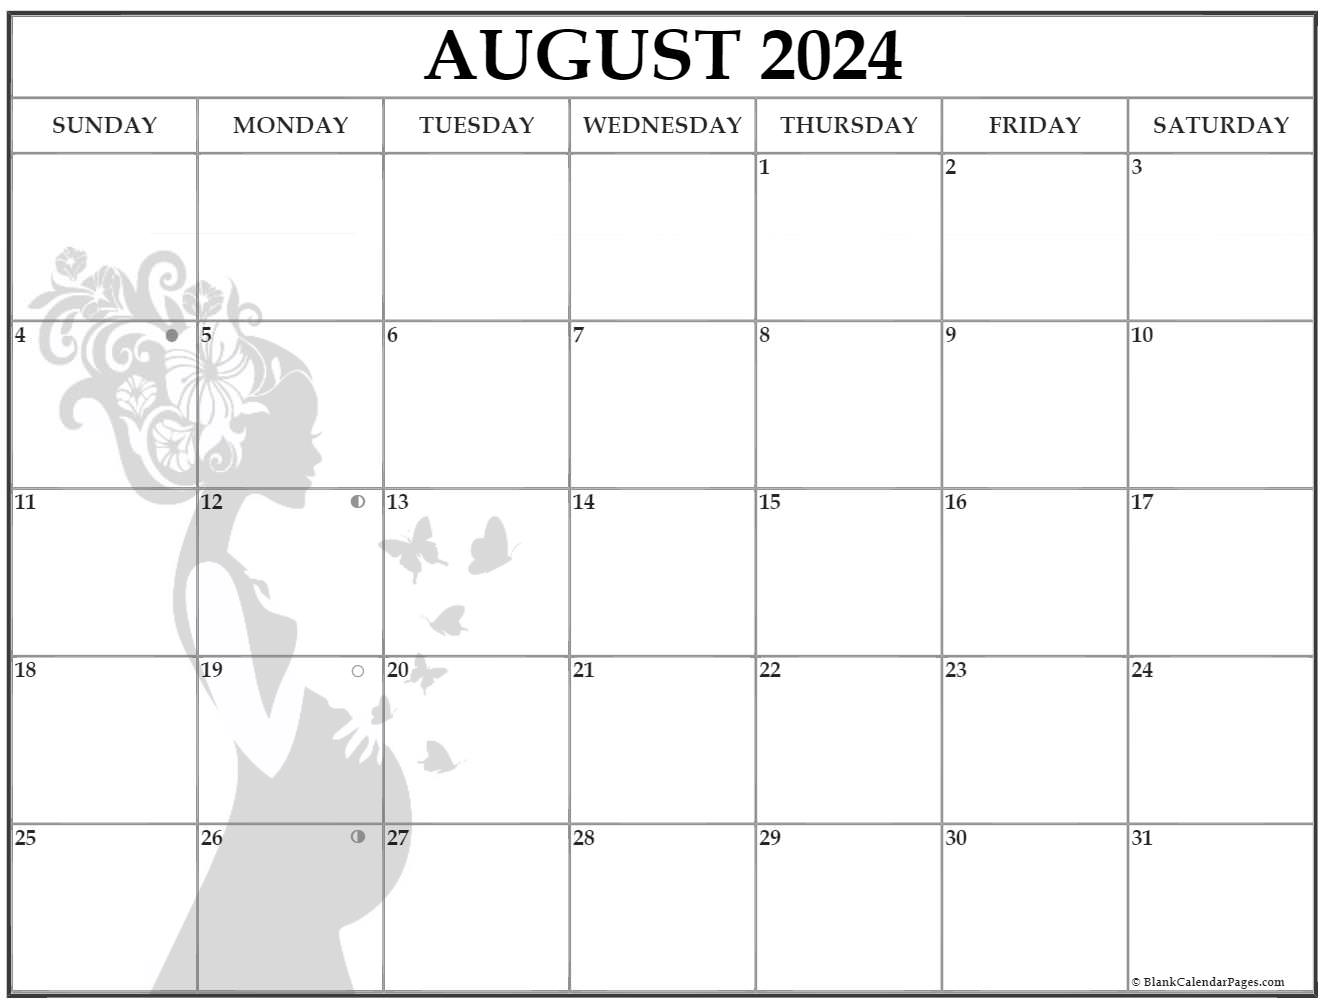 August 2022 Pregnancy Calendar Fertility Calendar